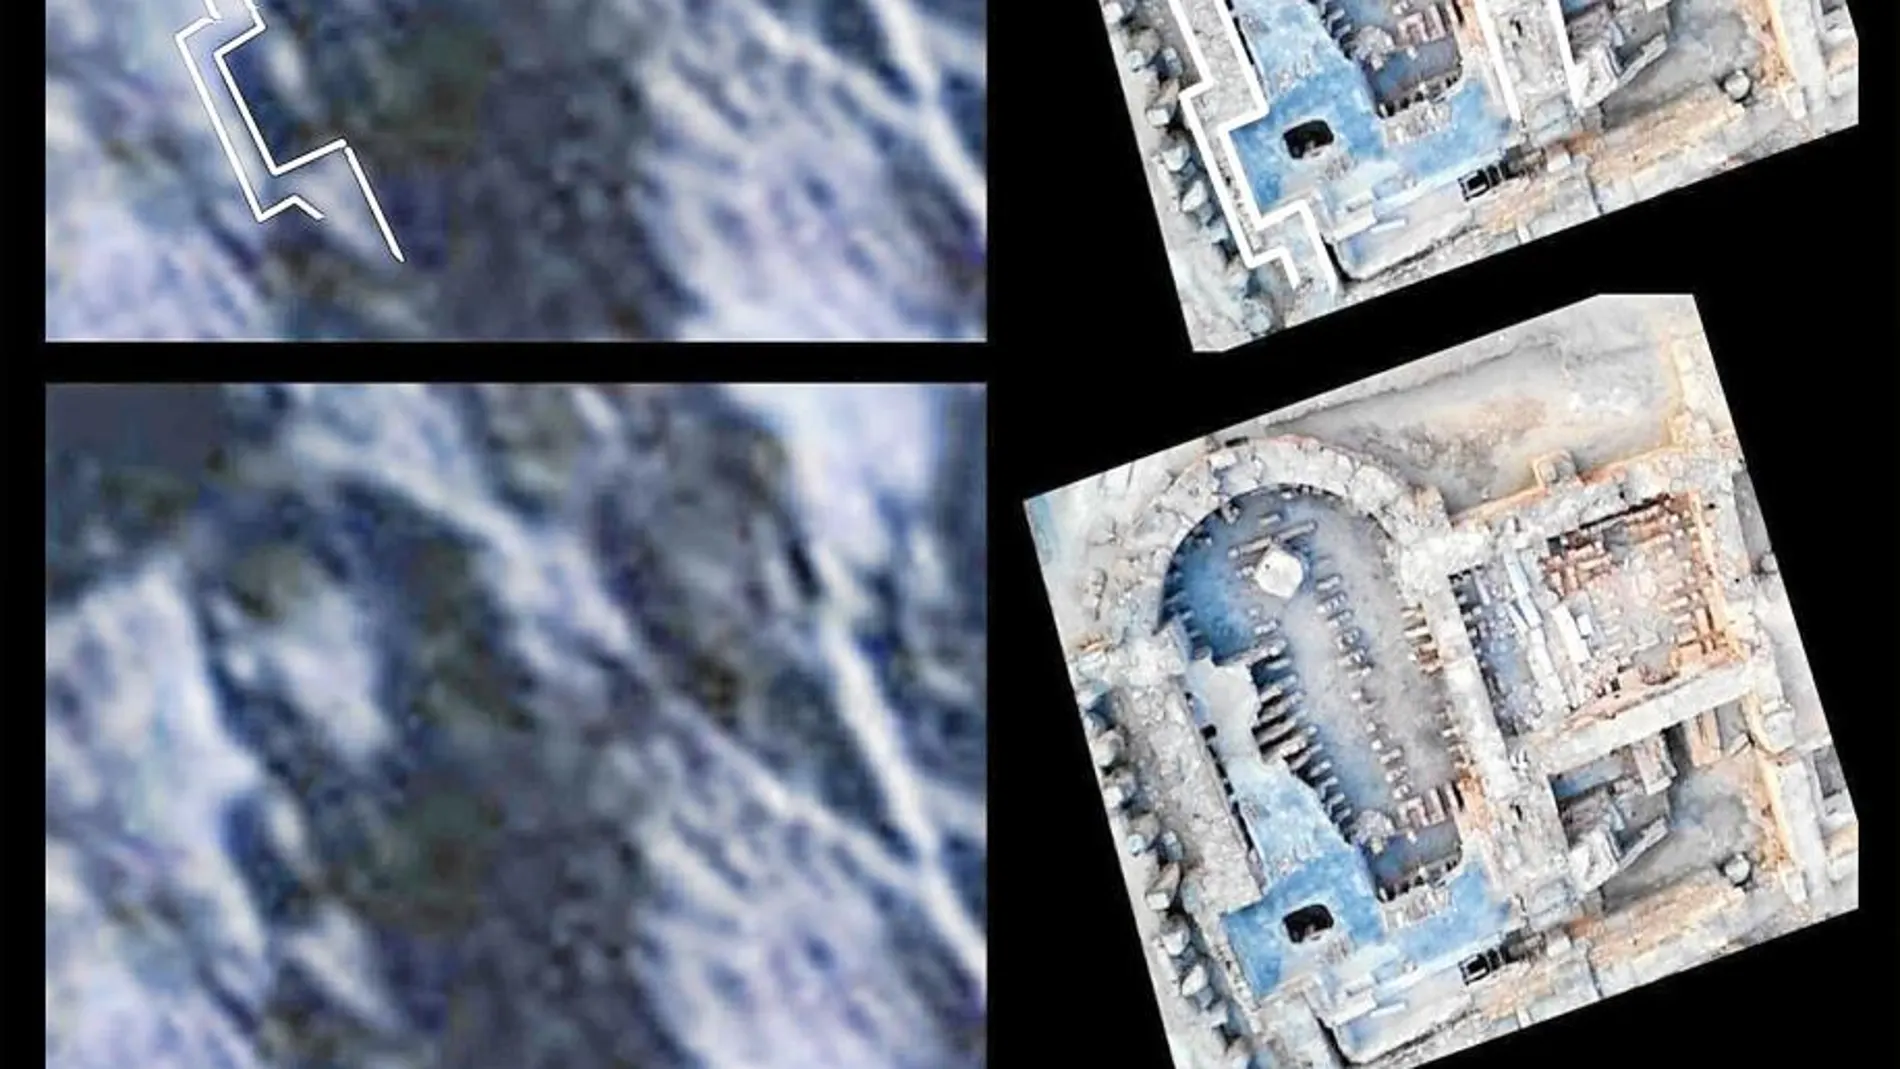 Comparativa entre una de las siluetas detectadas y el santuario de Mura